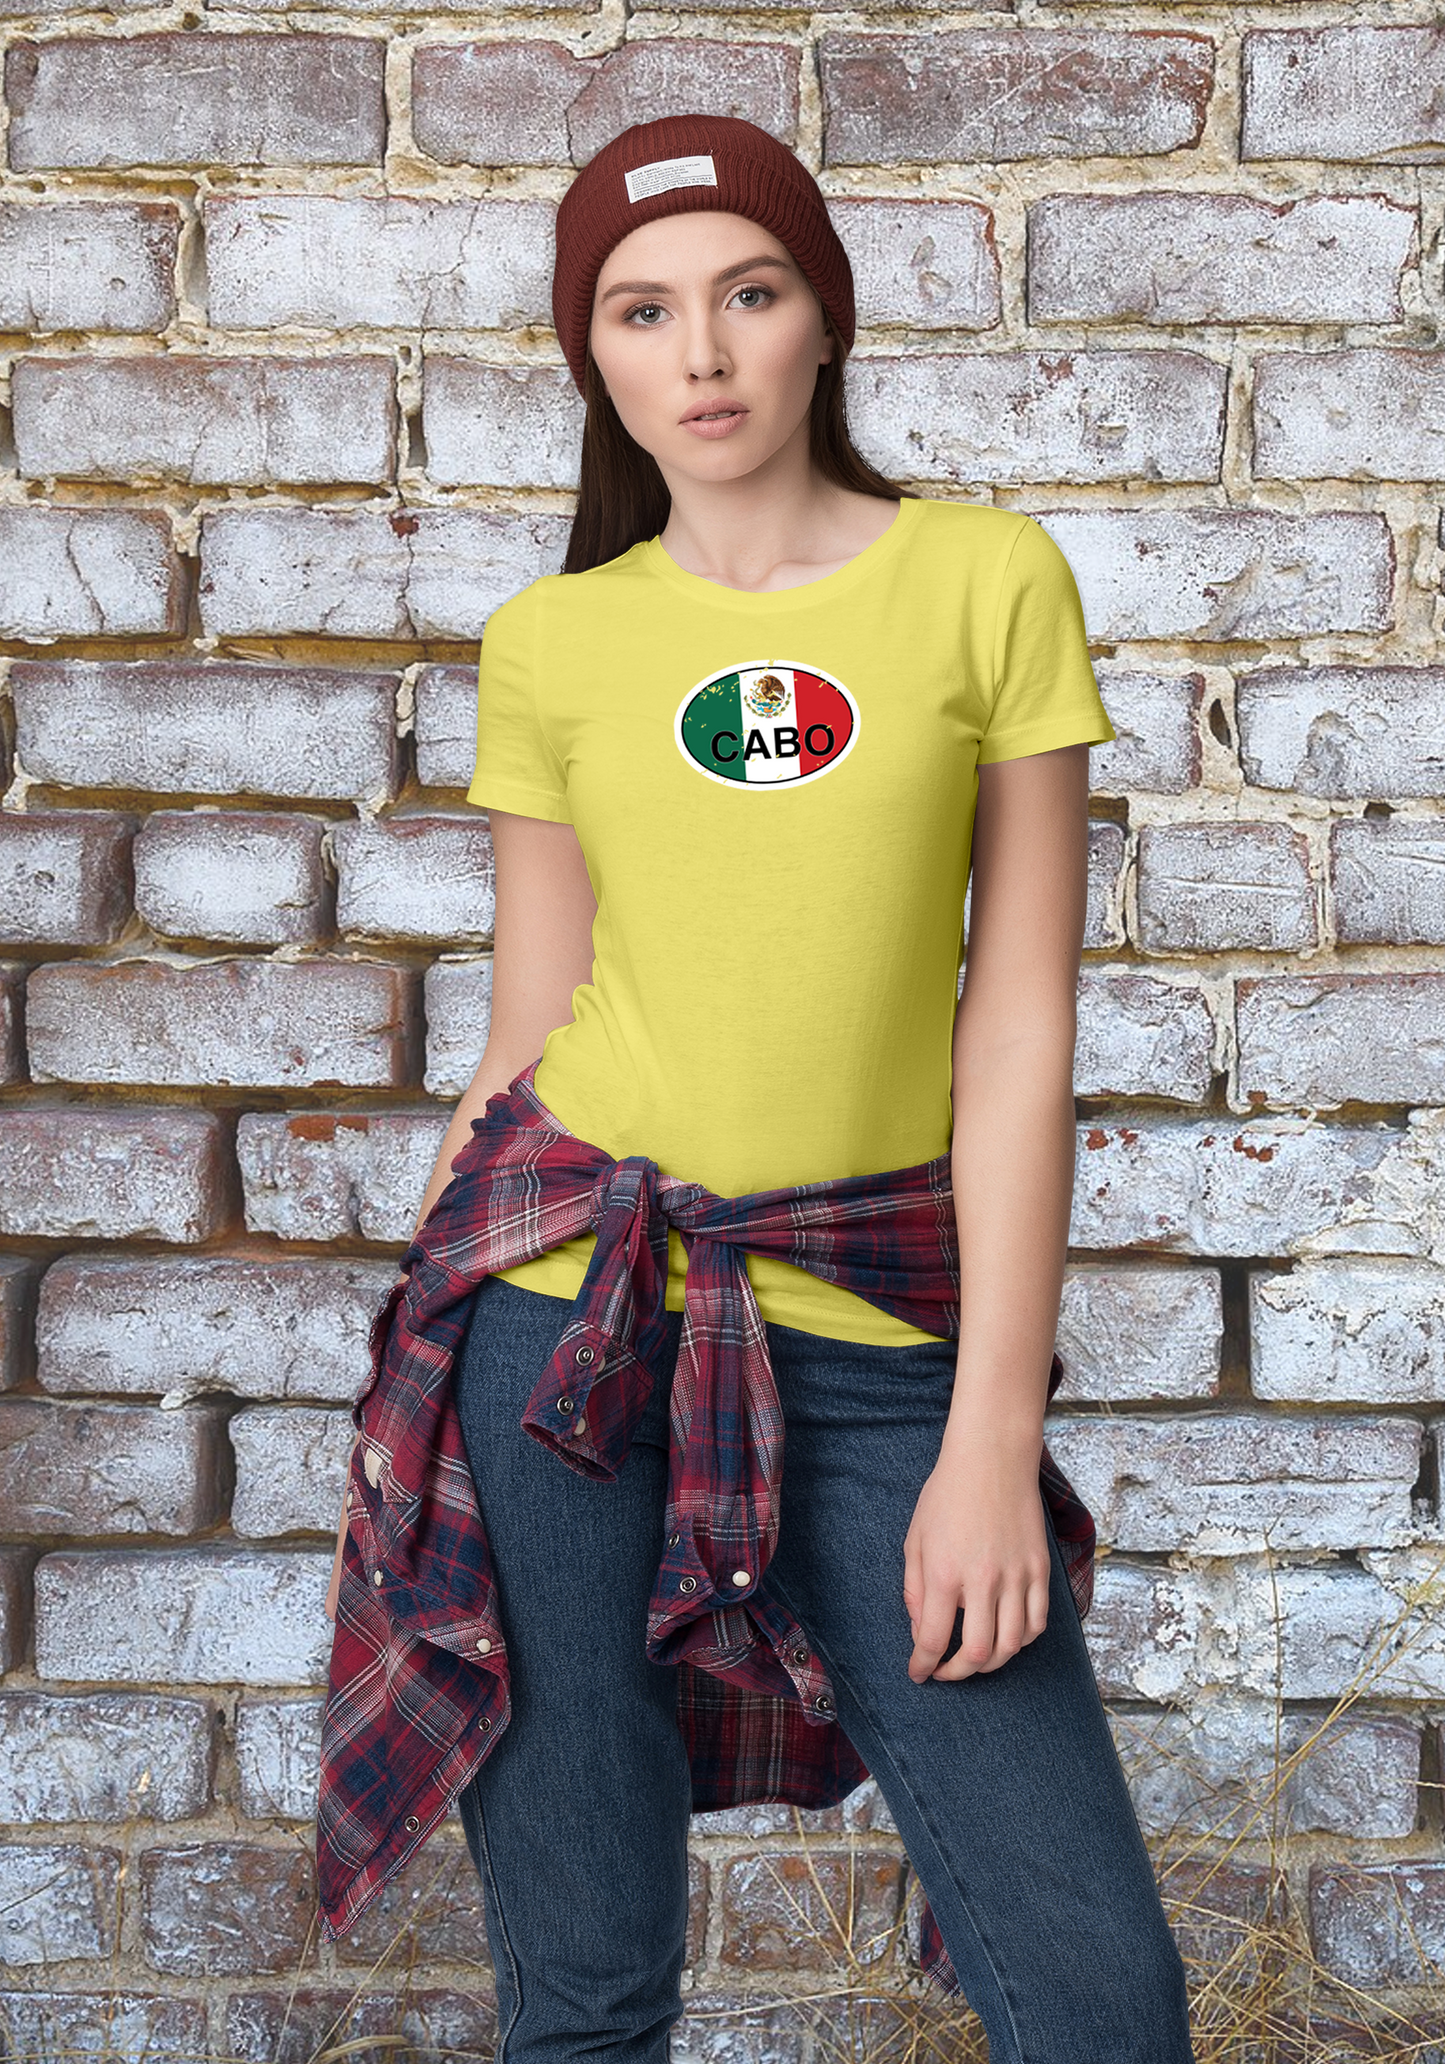 Cabo Women's Flag T-Shirt Souvenirs - My Destination Location